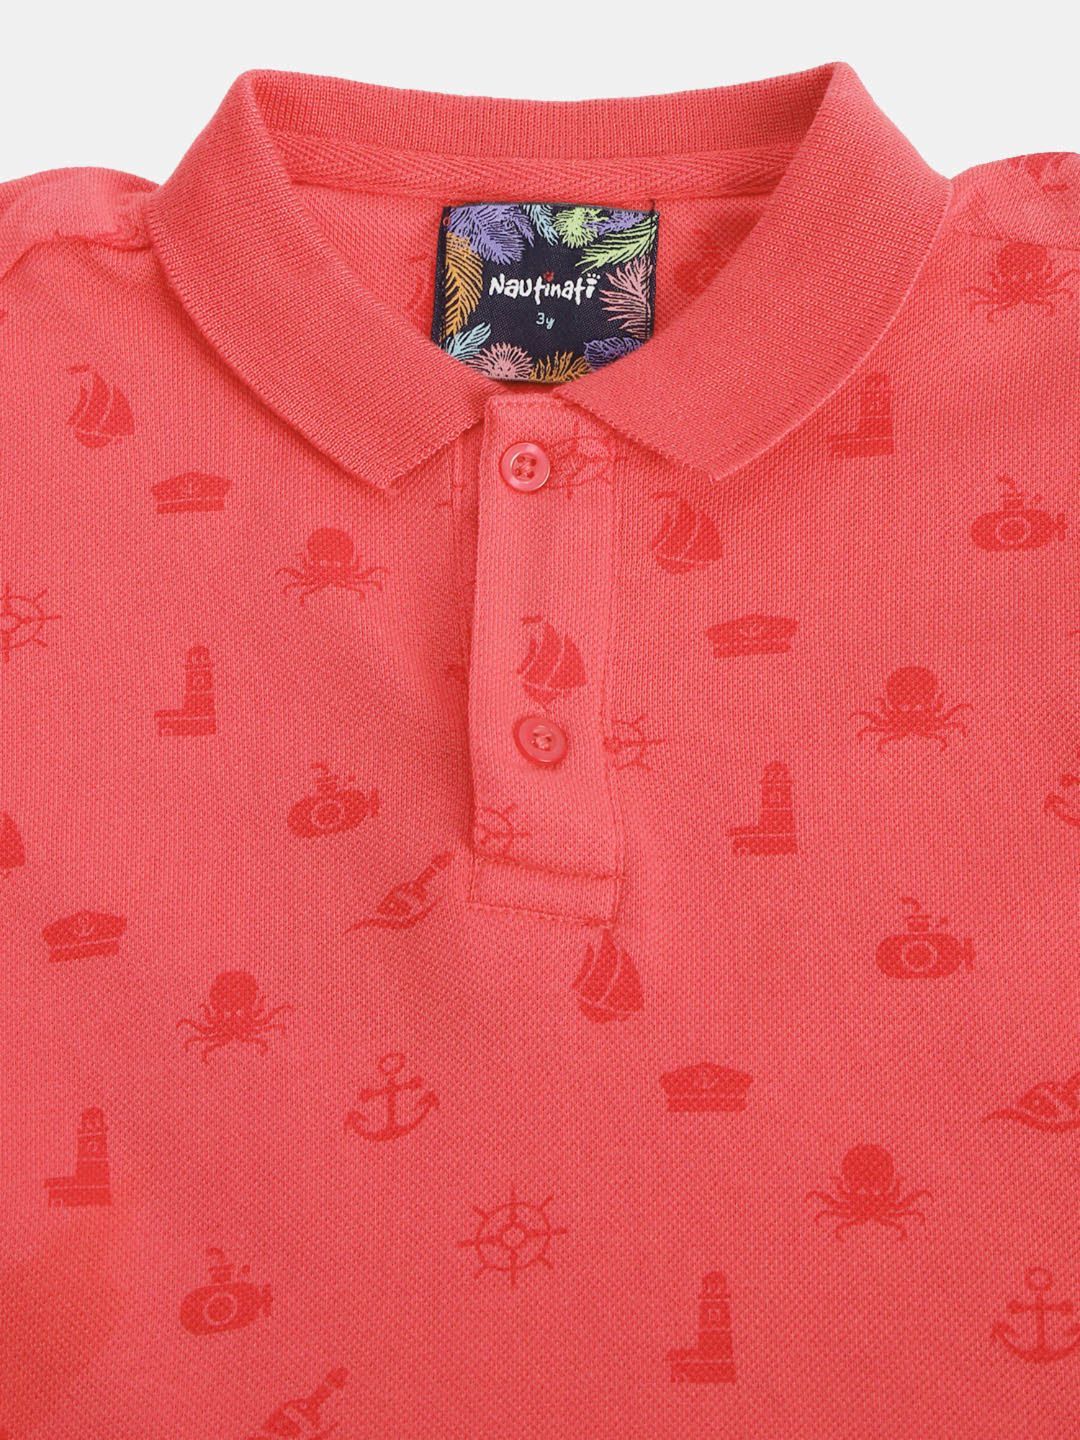 Boys Coral Coloured Printed Tshirt